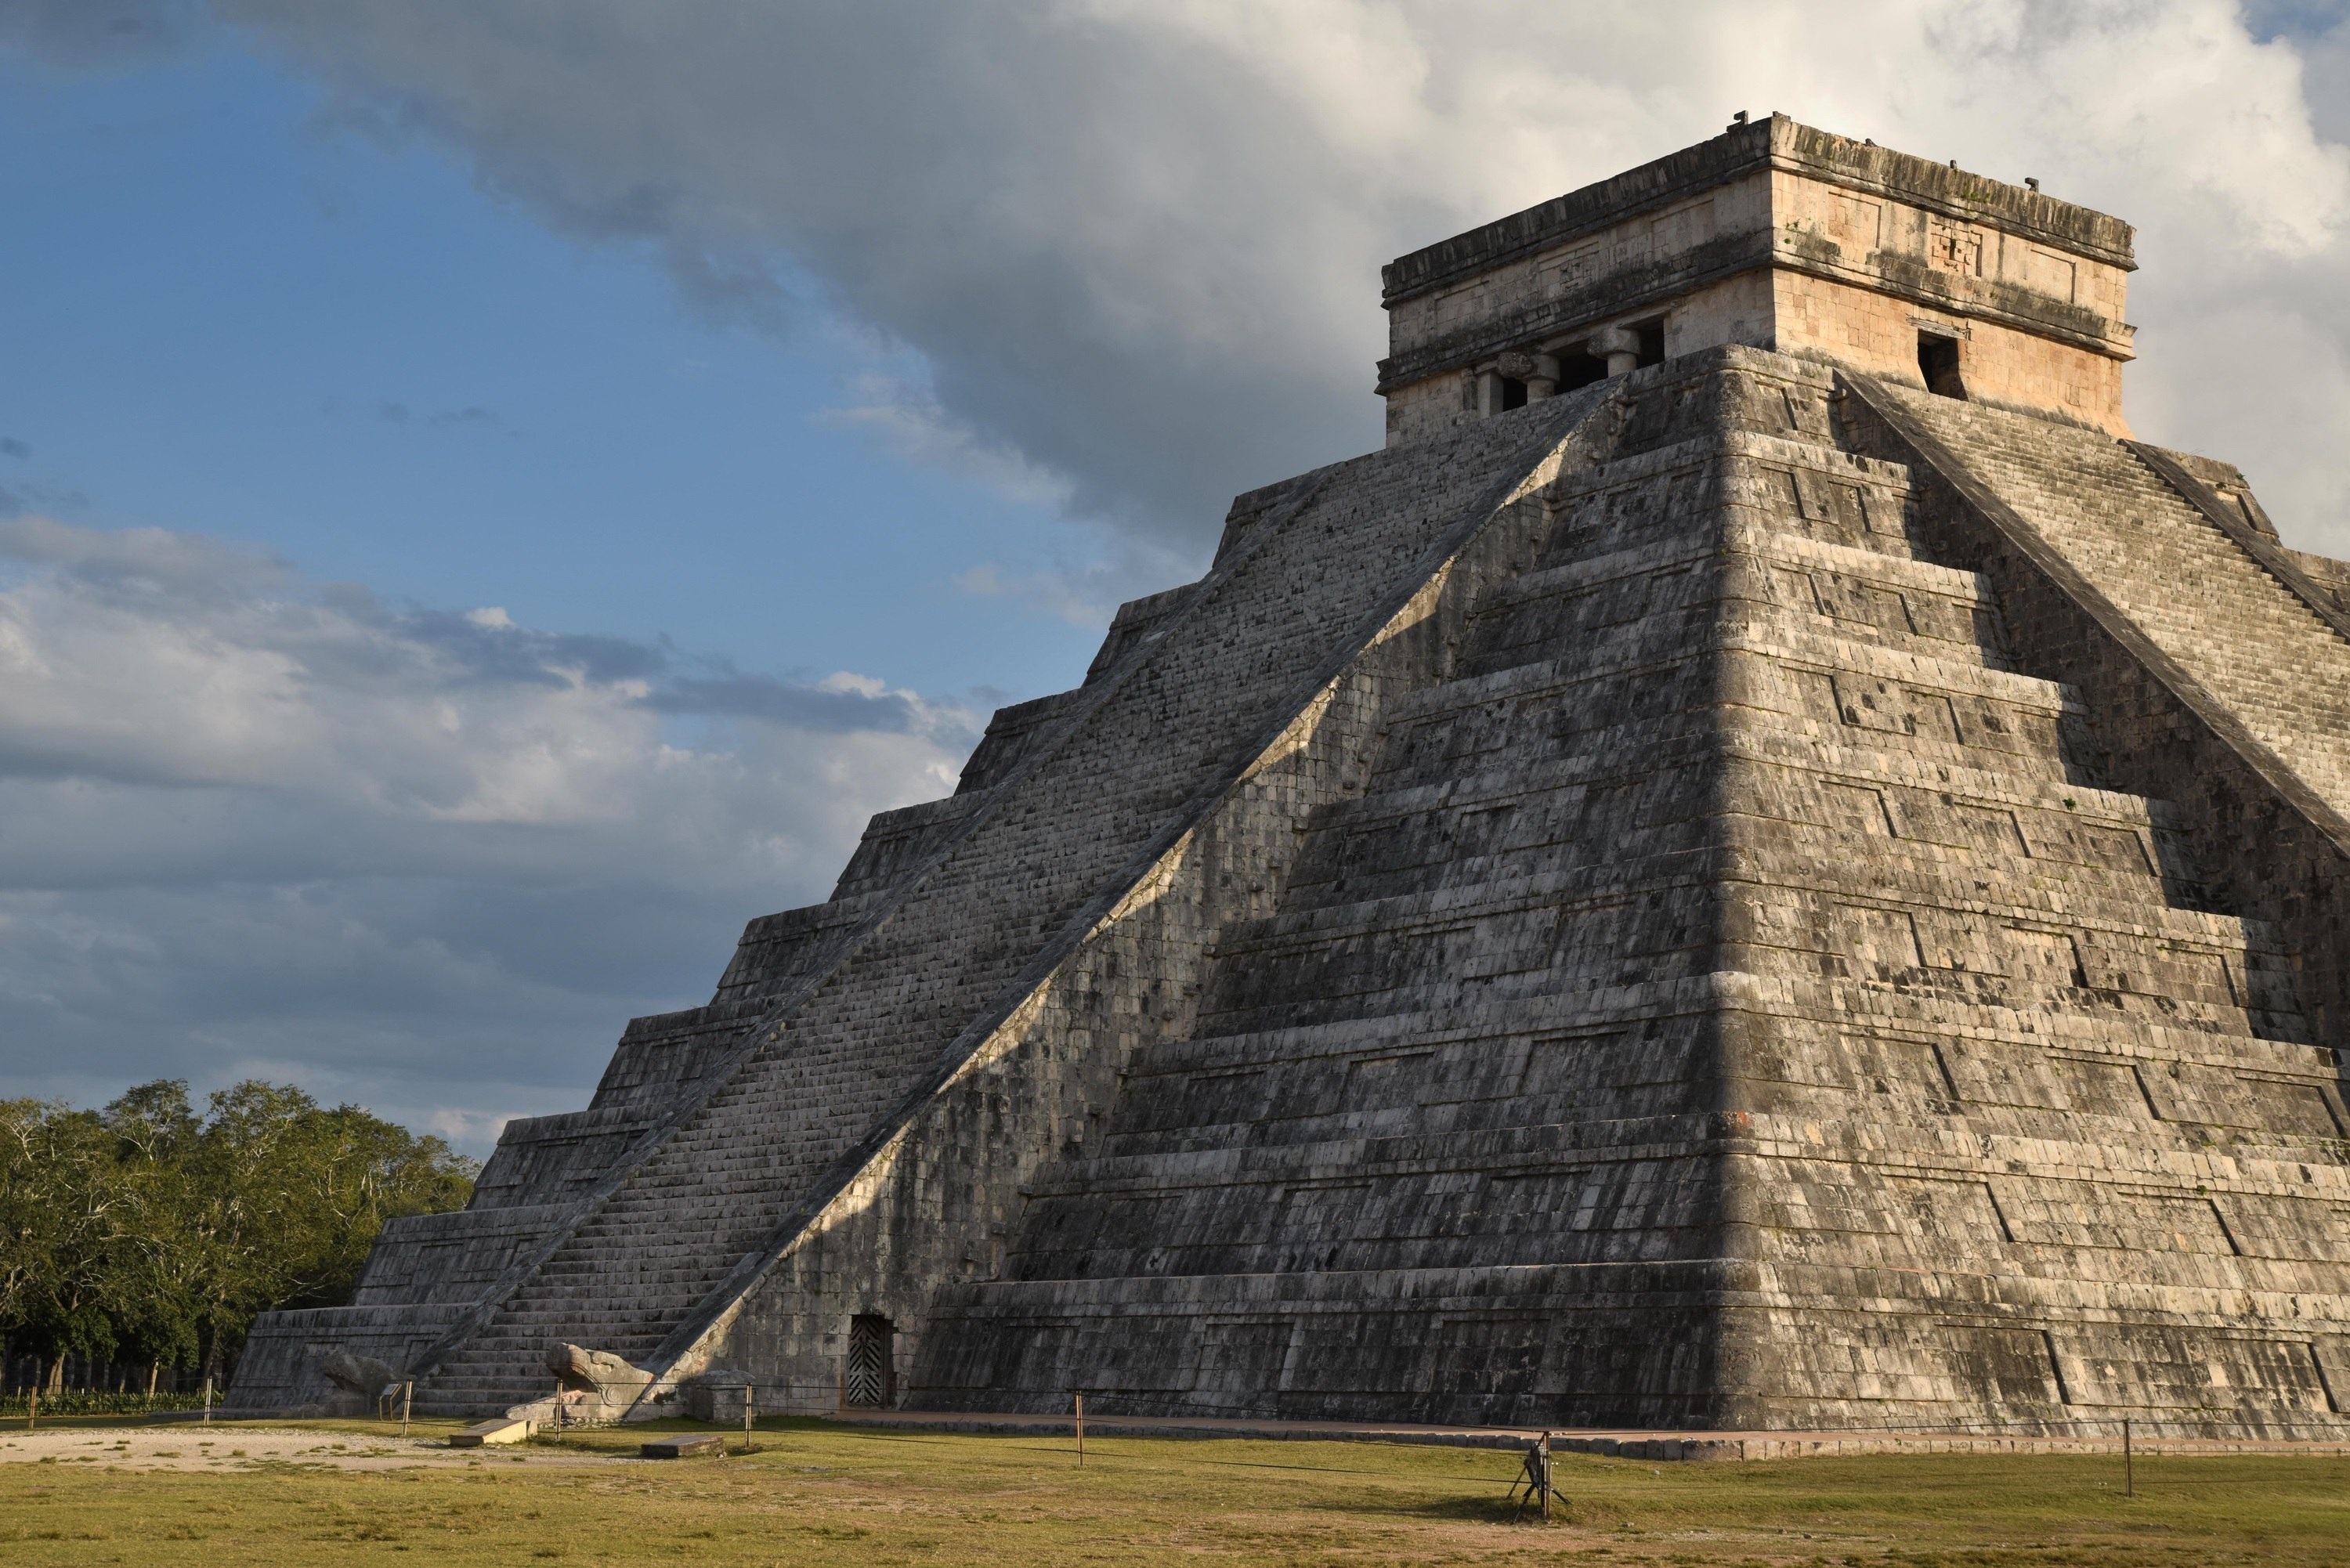 La pirámide Kukulcán durante el fenómeno de luz y sombra, conocida como el Templo de las Siete Muñecas, en la zona arqueológica de Dzibilchaltún en el estado mexicano de Yucatán. (EFE/ Cuauhtémoc Moreno)
